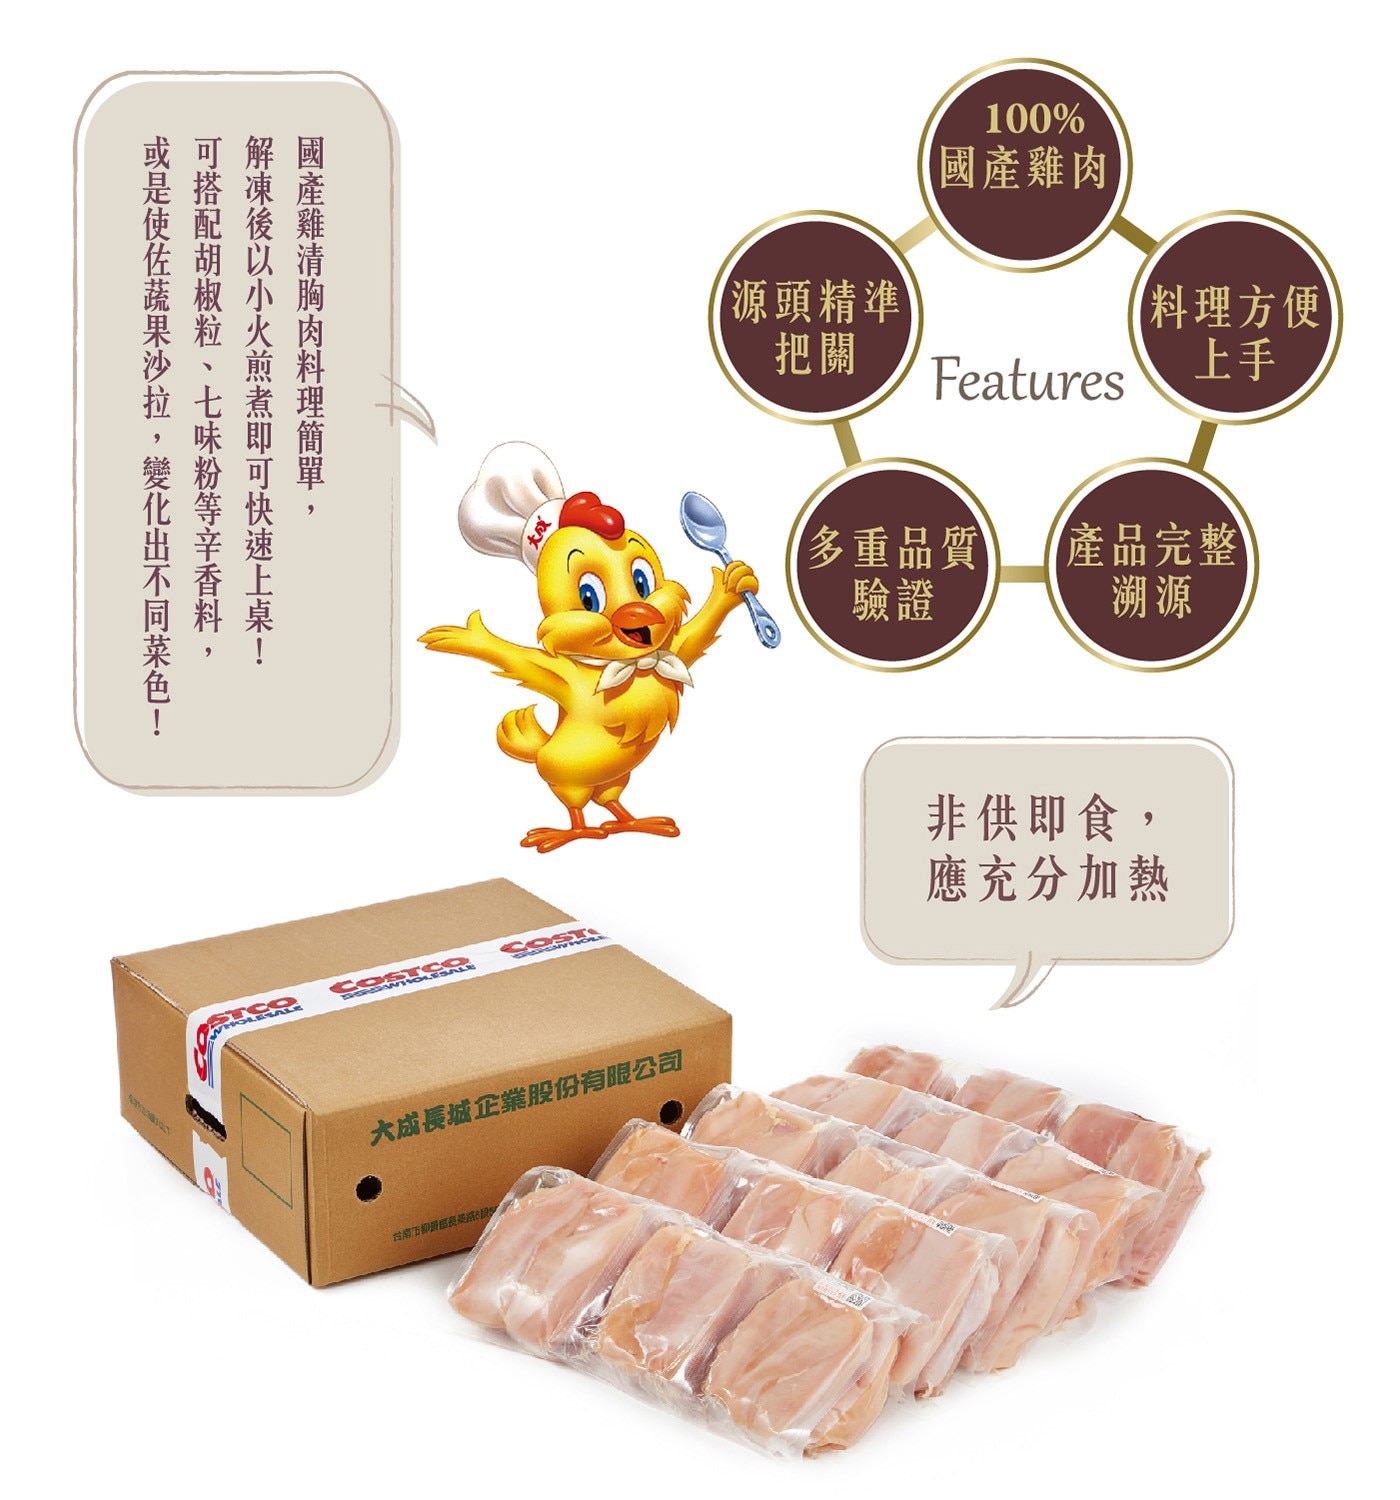 大成 台灣冷凍雞清胸肉 100%國產雞肉 料理方便上手 多重品質驗證